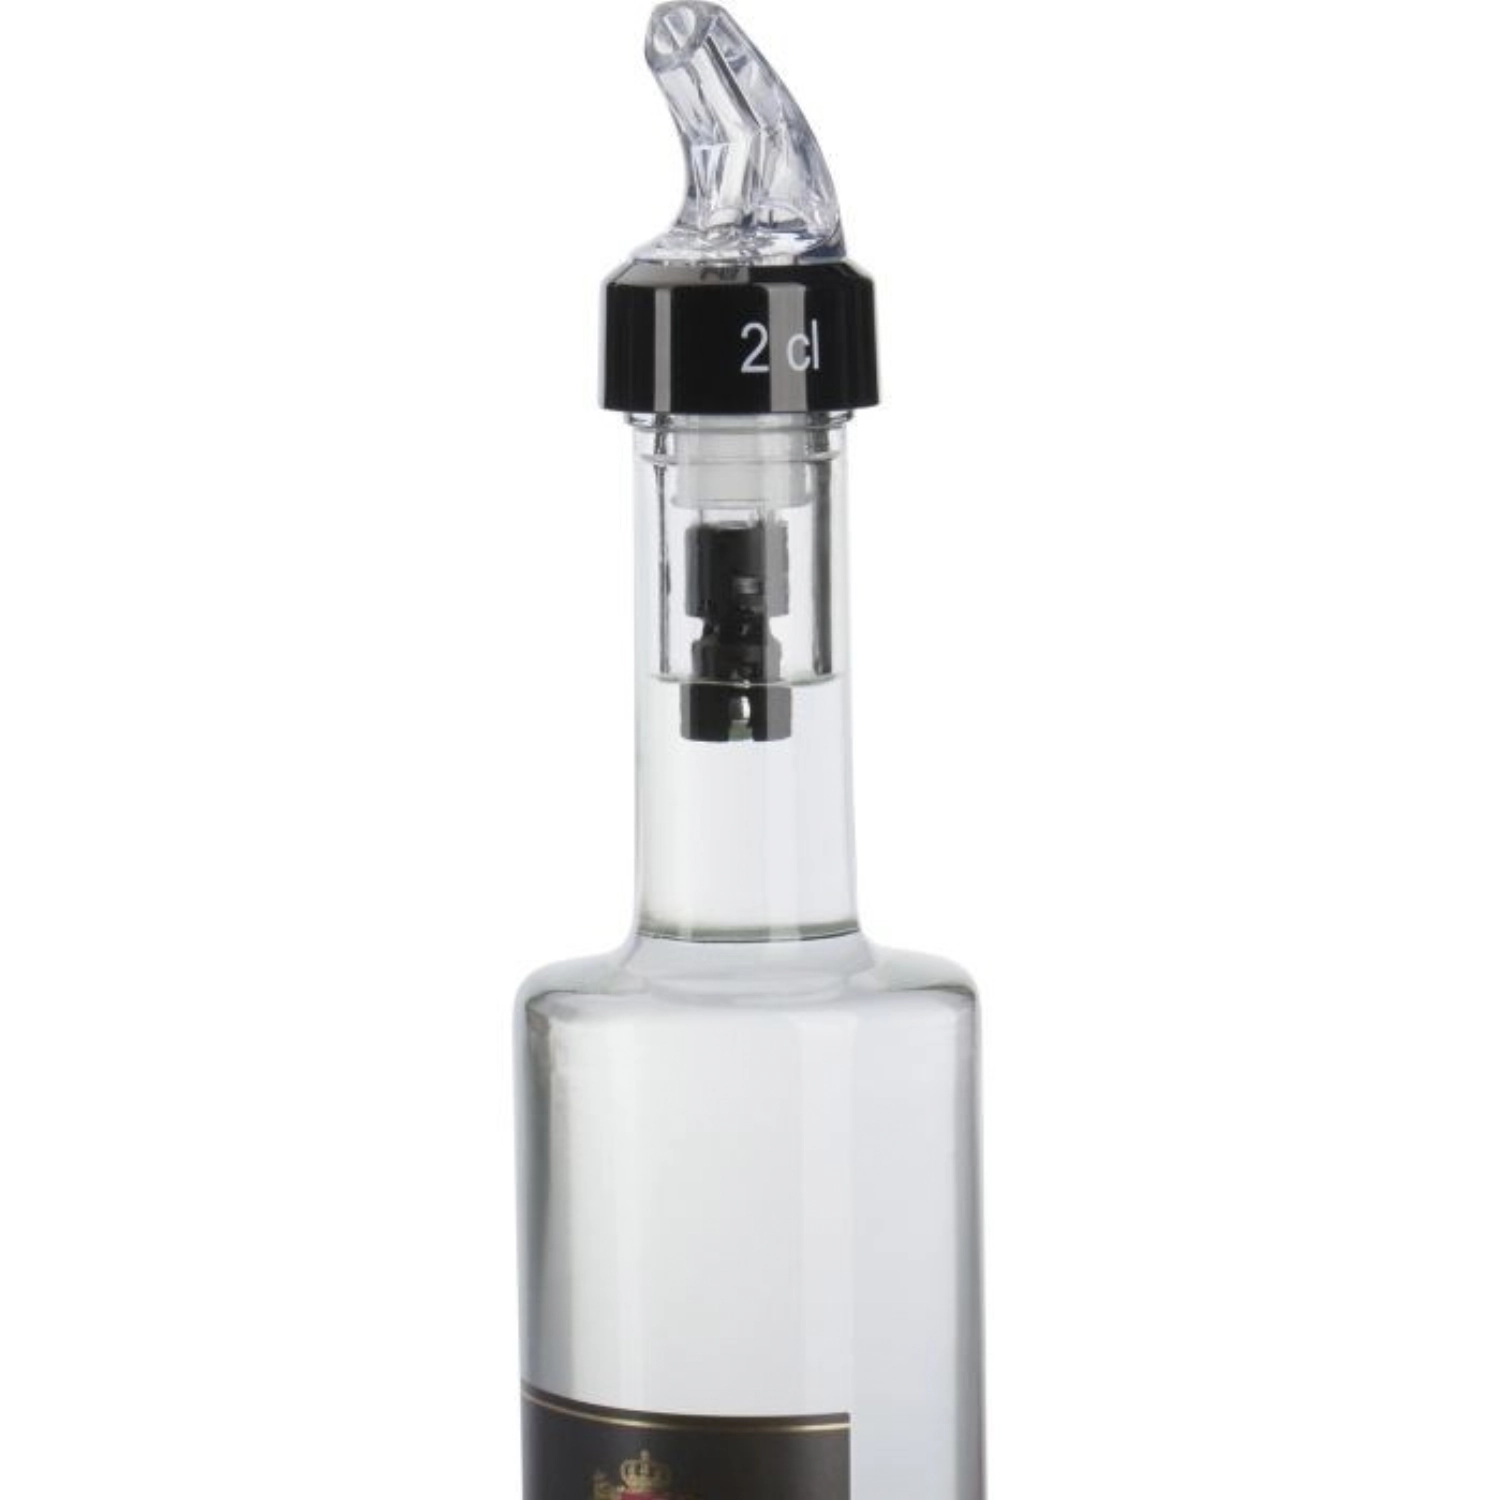 Dosierausgiesser Auto-Pour 2,0 cl glasklar in Blister